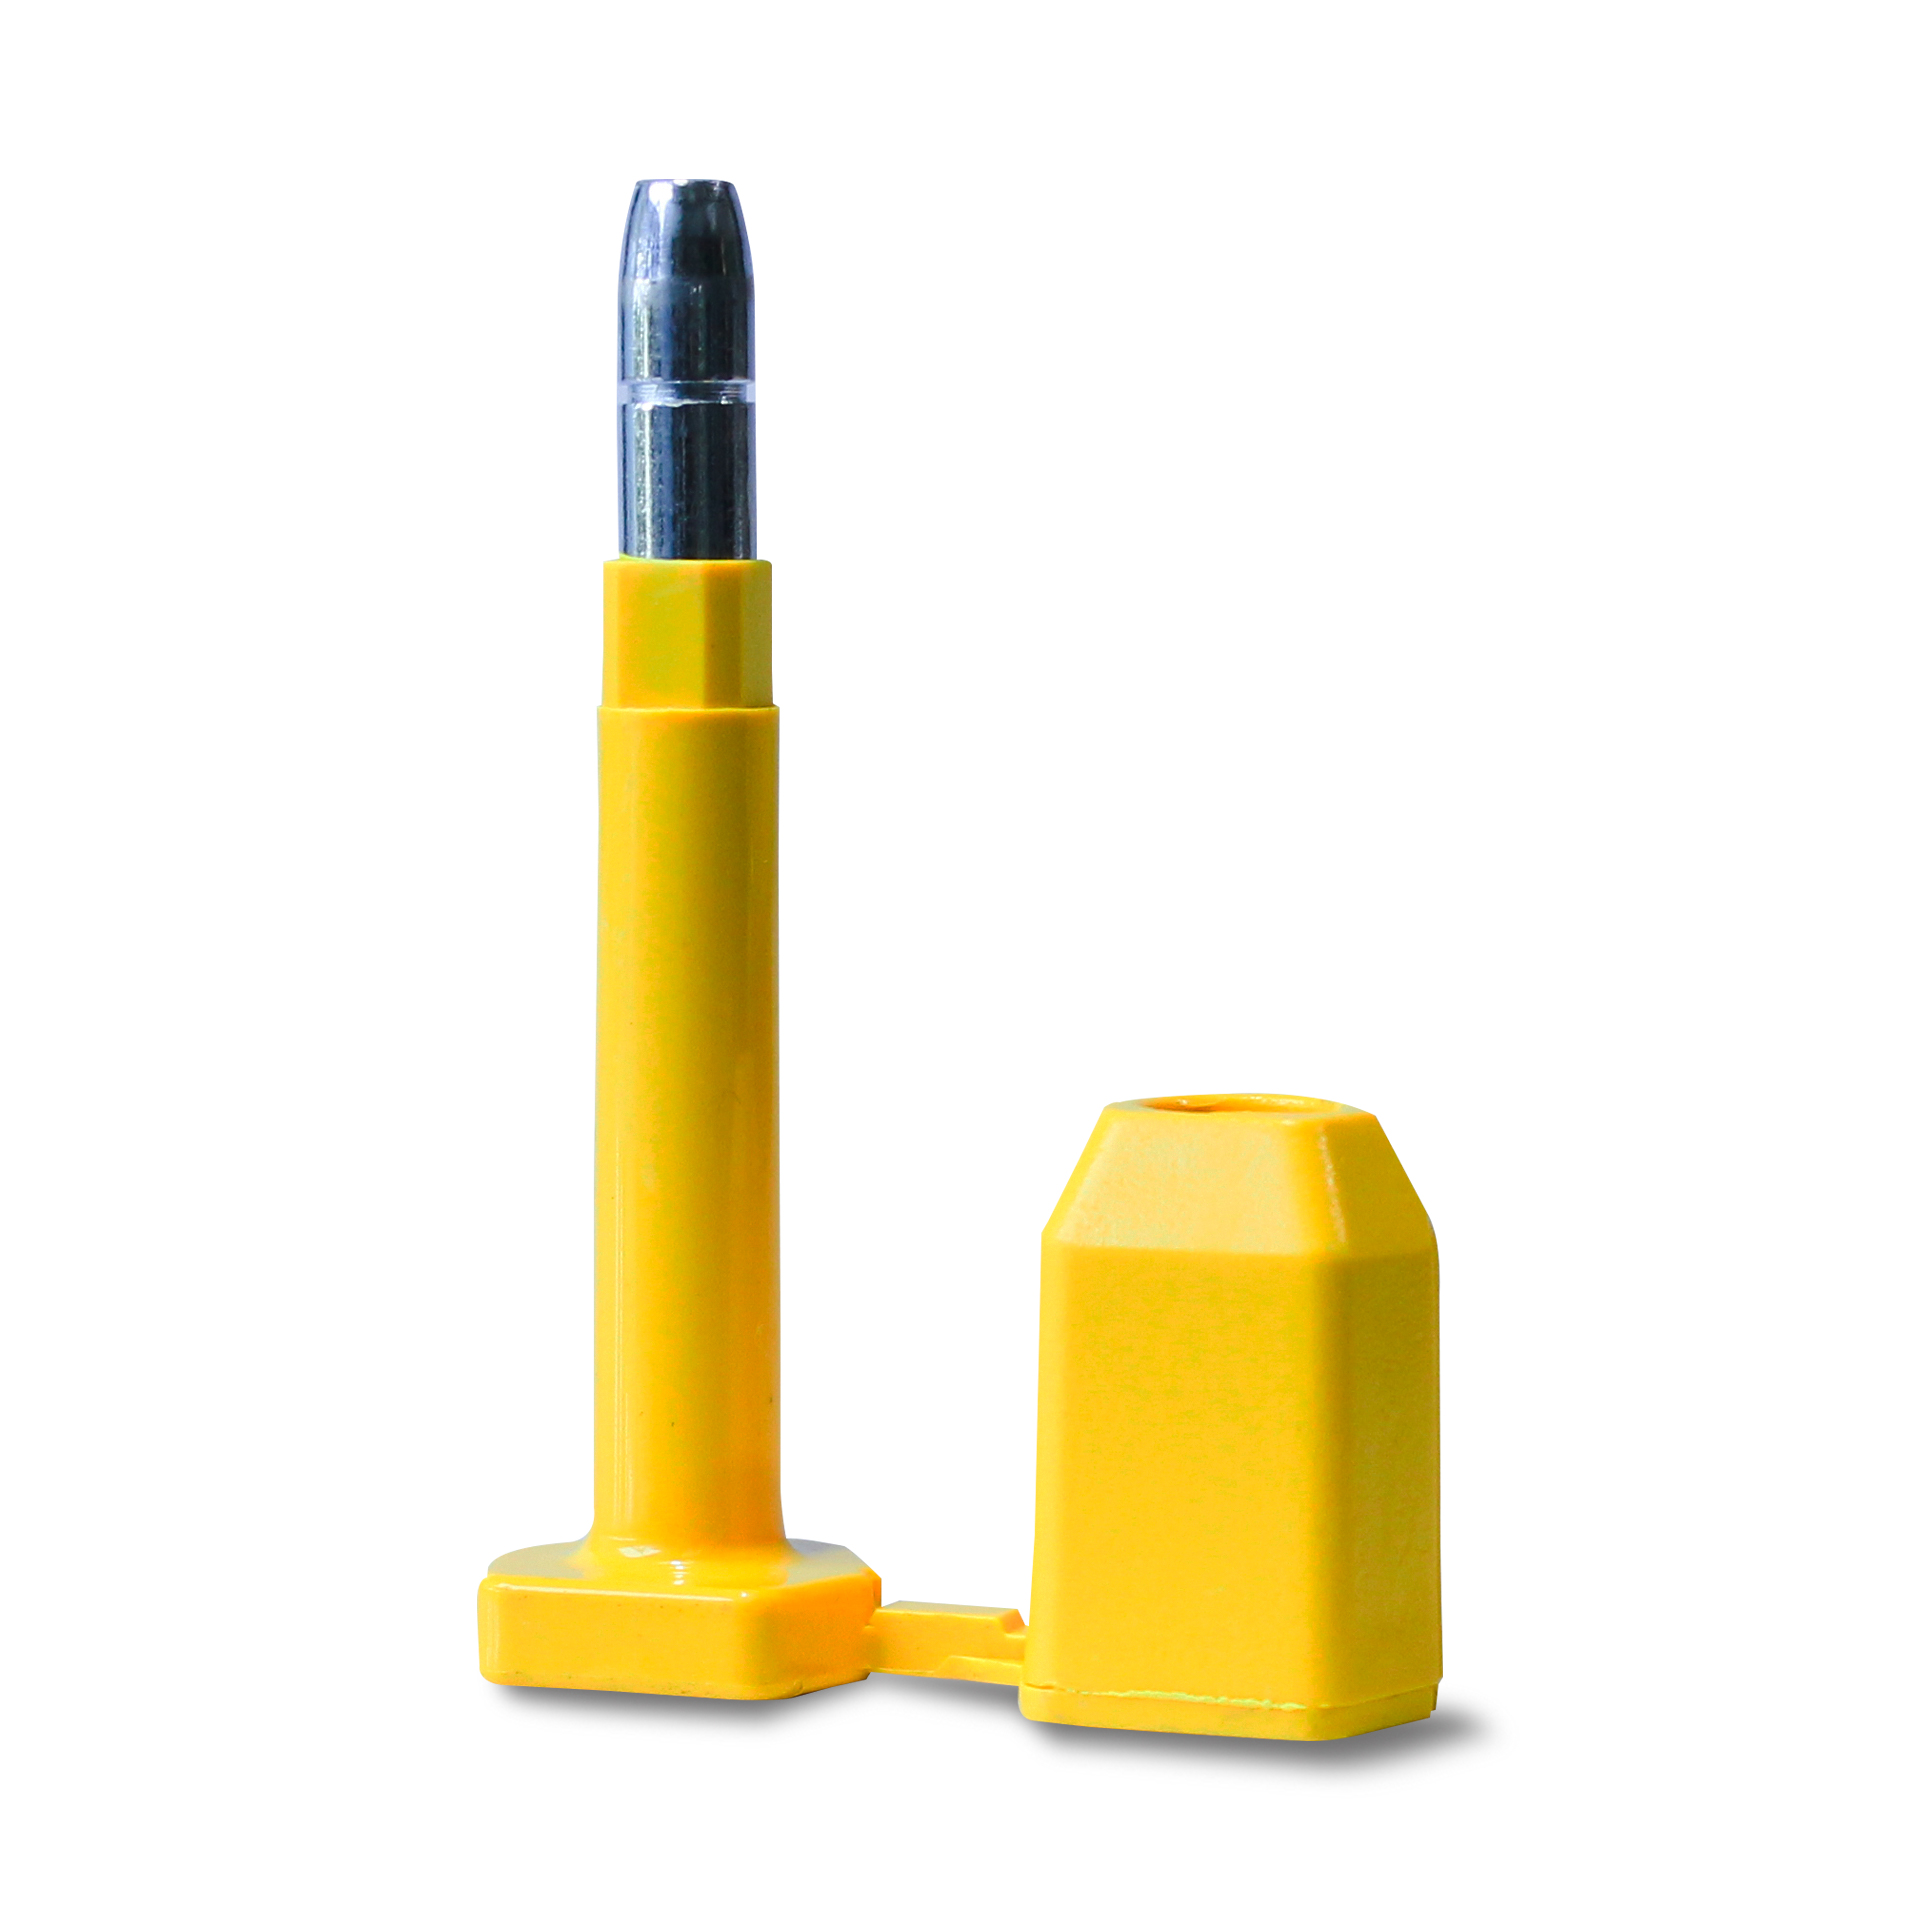 ซีลล็อคนิรภัยแบบเหล็ก Steel Security Seal สีเหลือง